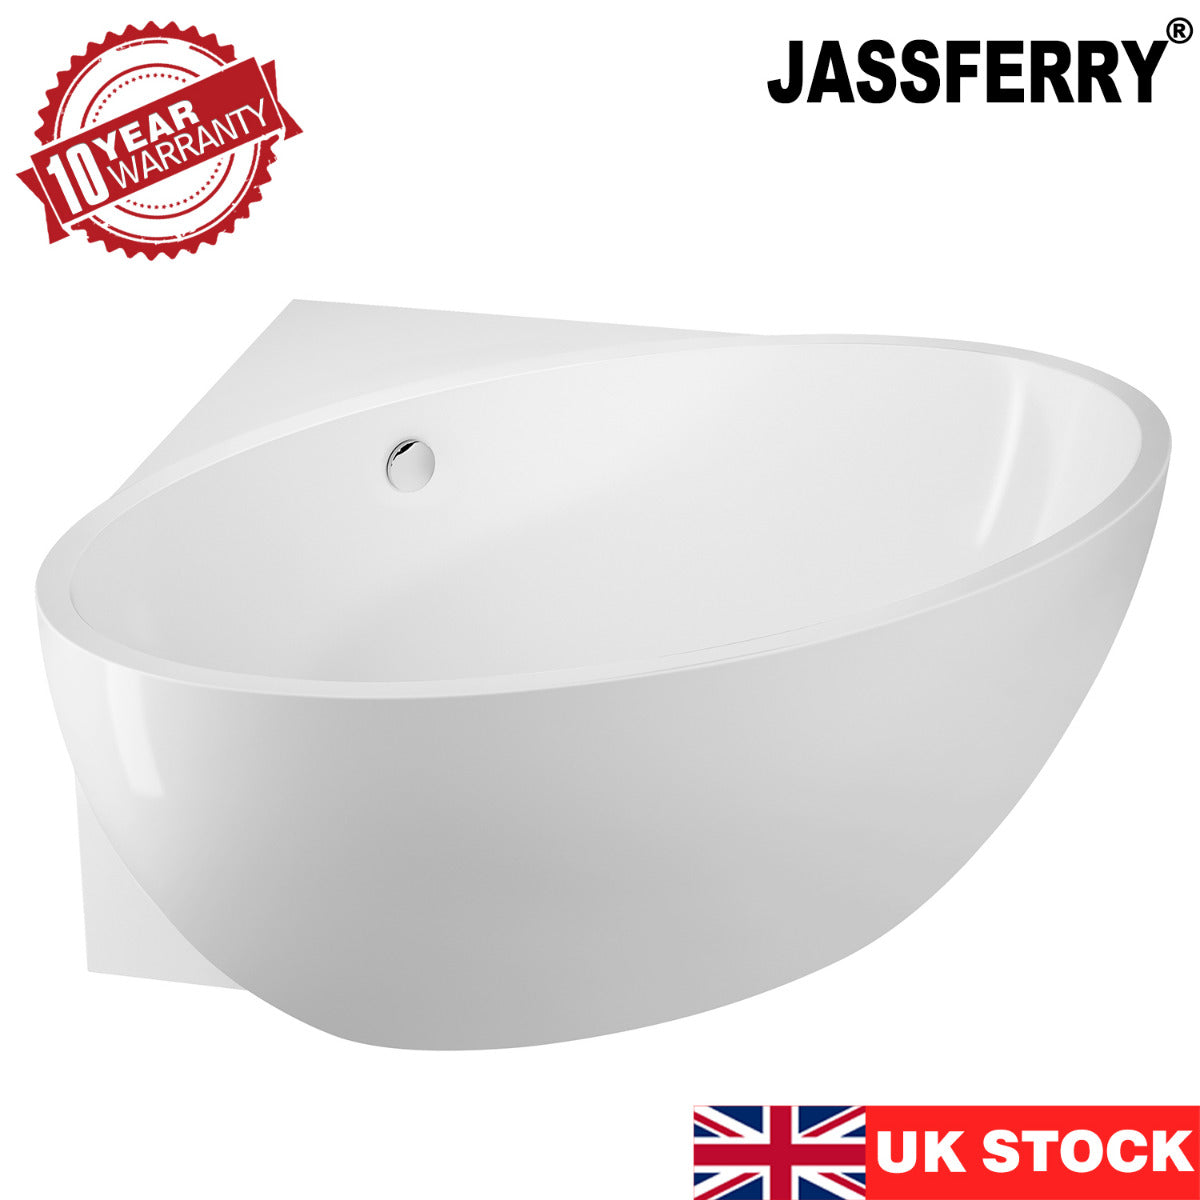 JassferryJASSFERRY 1510 mm Vintage Design Freestanding Bathtub Luxury Stand Alone Corner Baths SPABathtubs